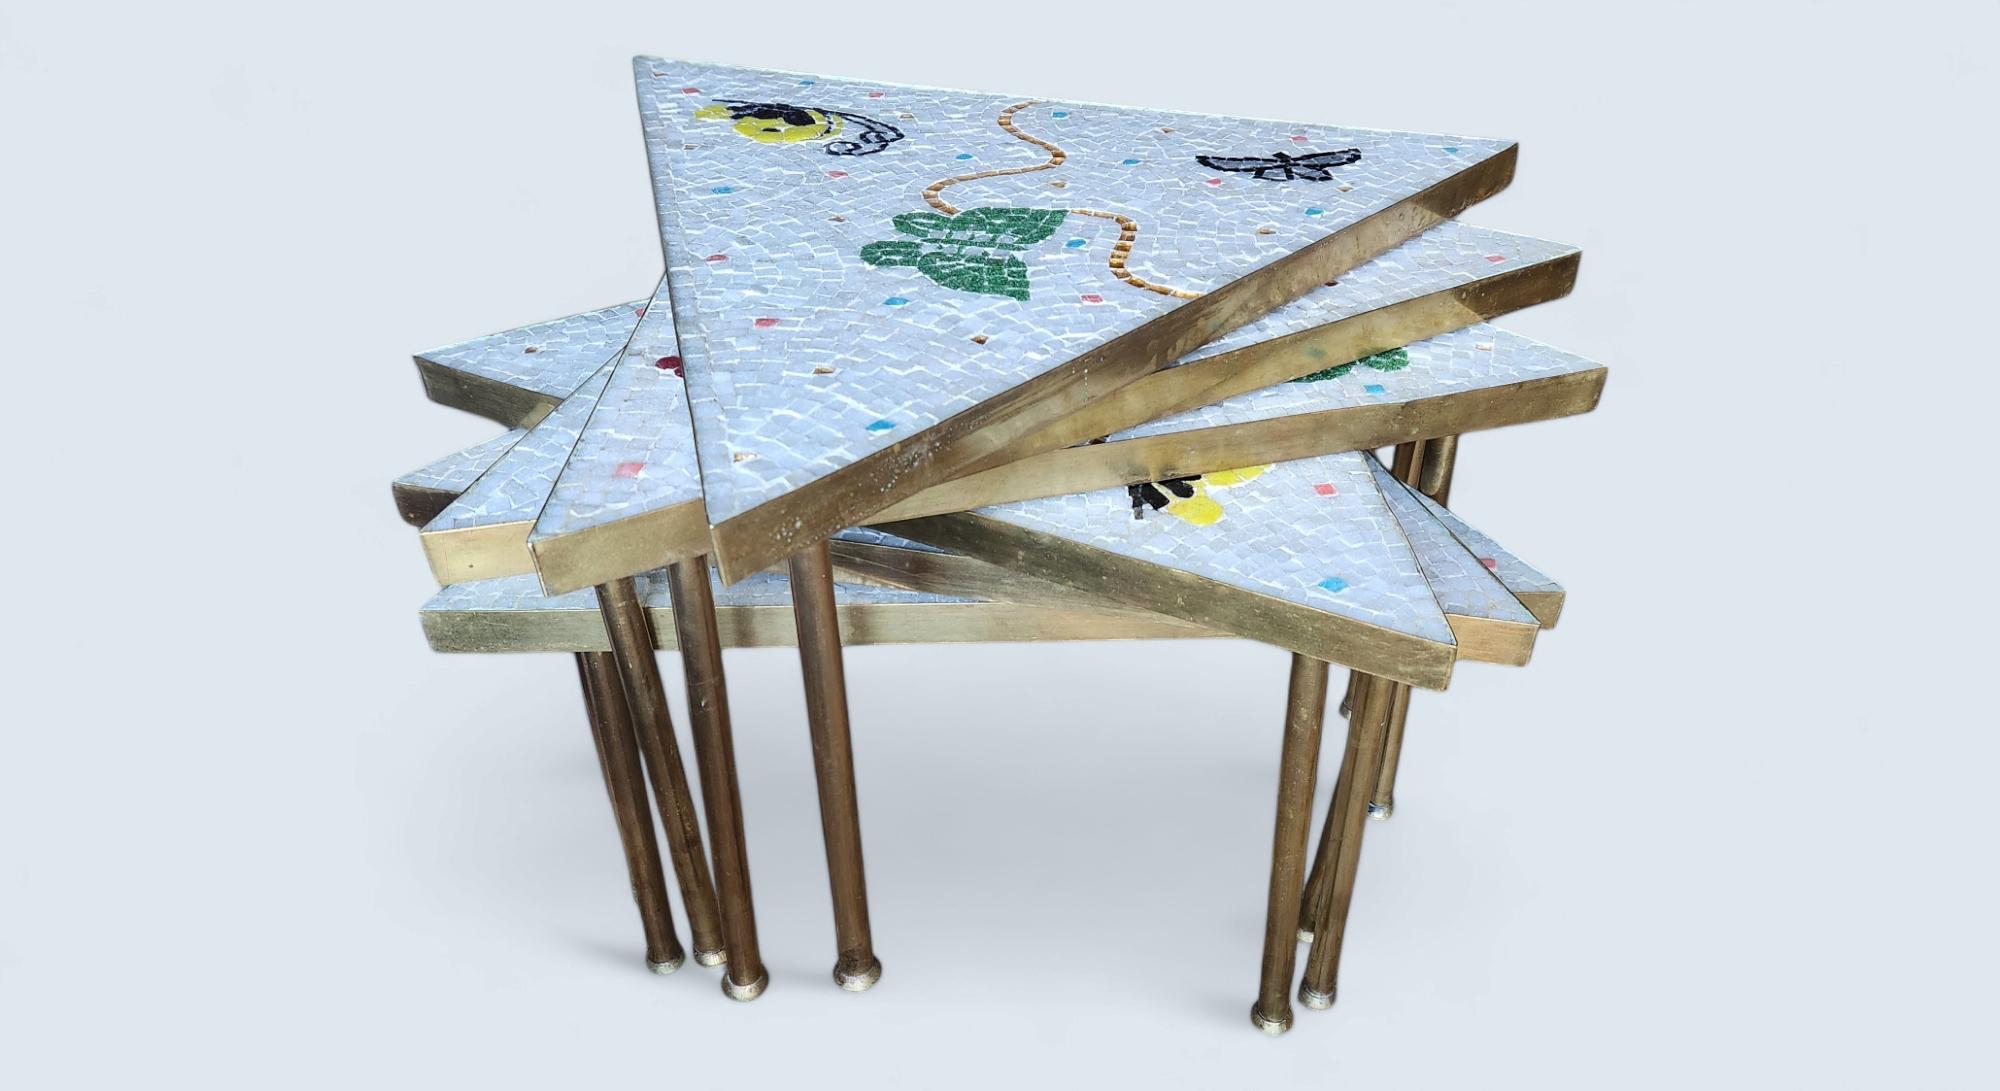 Sechsteiliger Studio-Mosaik-Tisch von Genaro Alvarez, bestehend aus komplizierten, eingelegten Glasmosaikmustern von 6 Schmetterlingen auf sechs dreieckigen, austauschbaren Mahagonisockeln, die in den 1950er Jahren im Studio von Genaro Alvarez in